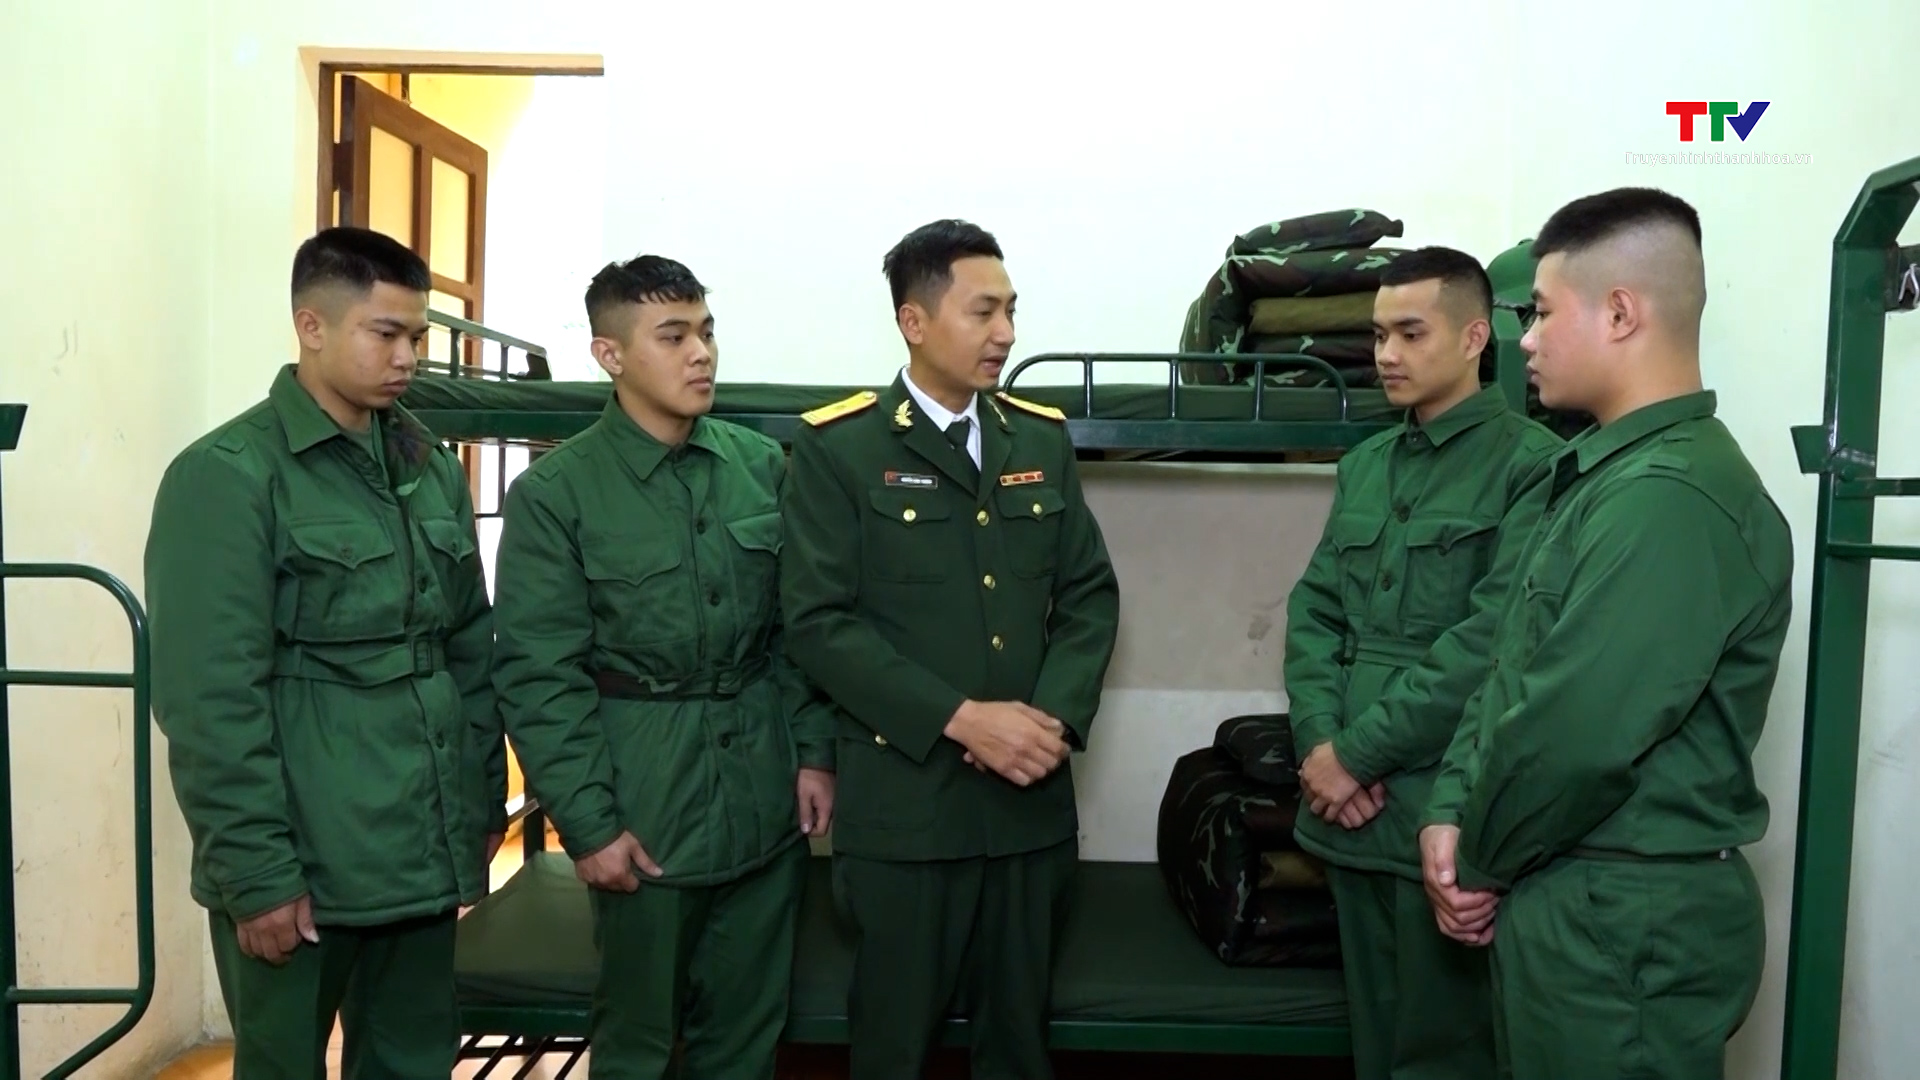 Trung đoàn 762, Bộ Chỉ huy Quân sự tỉnh Thanh Hóa tiếp nhận chiến sĩ mới - Ảnh 3.